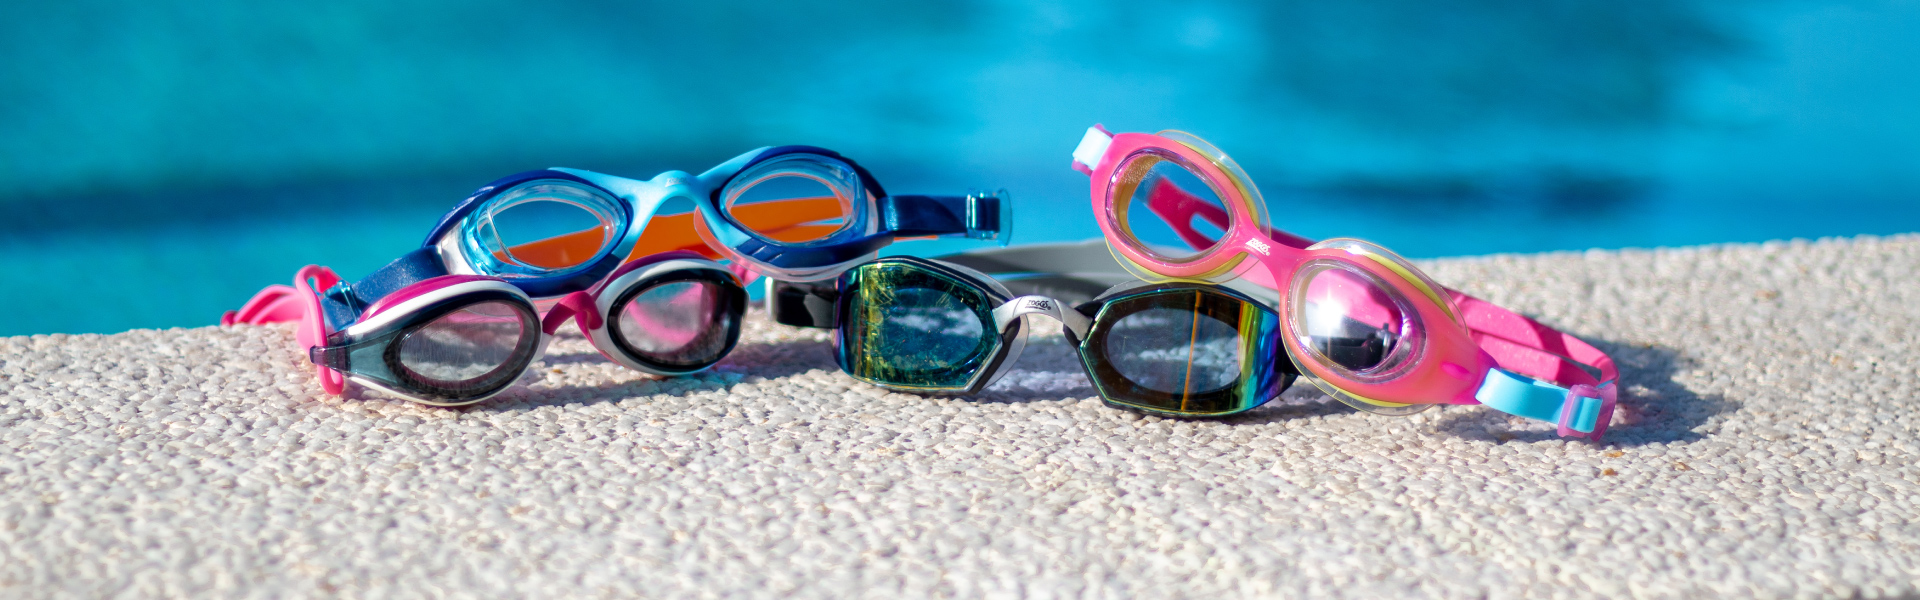 Product Spotlight - Zoggs Launch Predator Flex Polarized Ultra Swimming Goggles